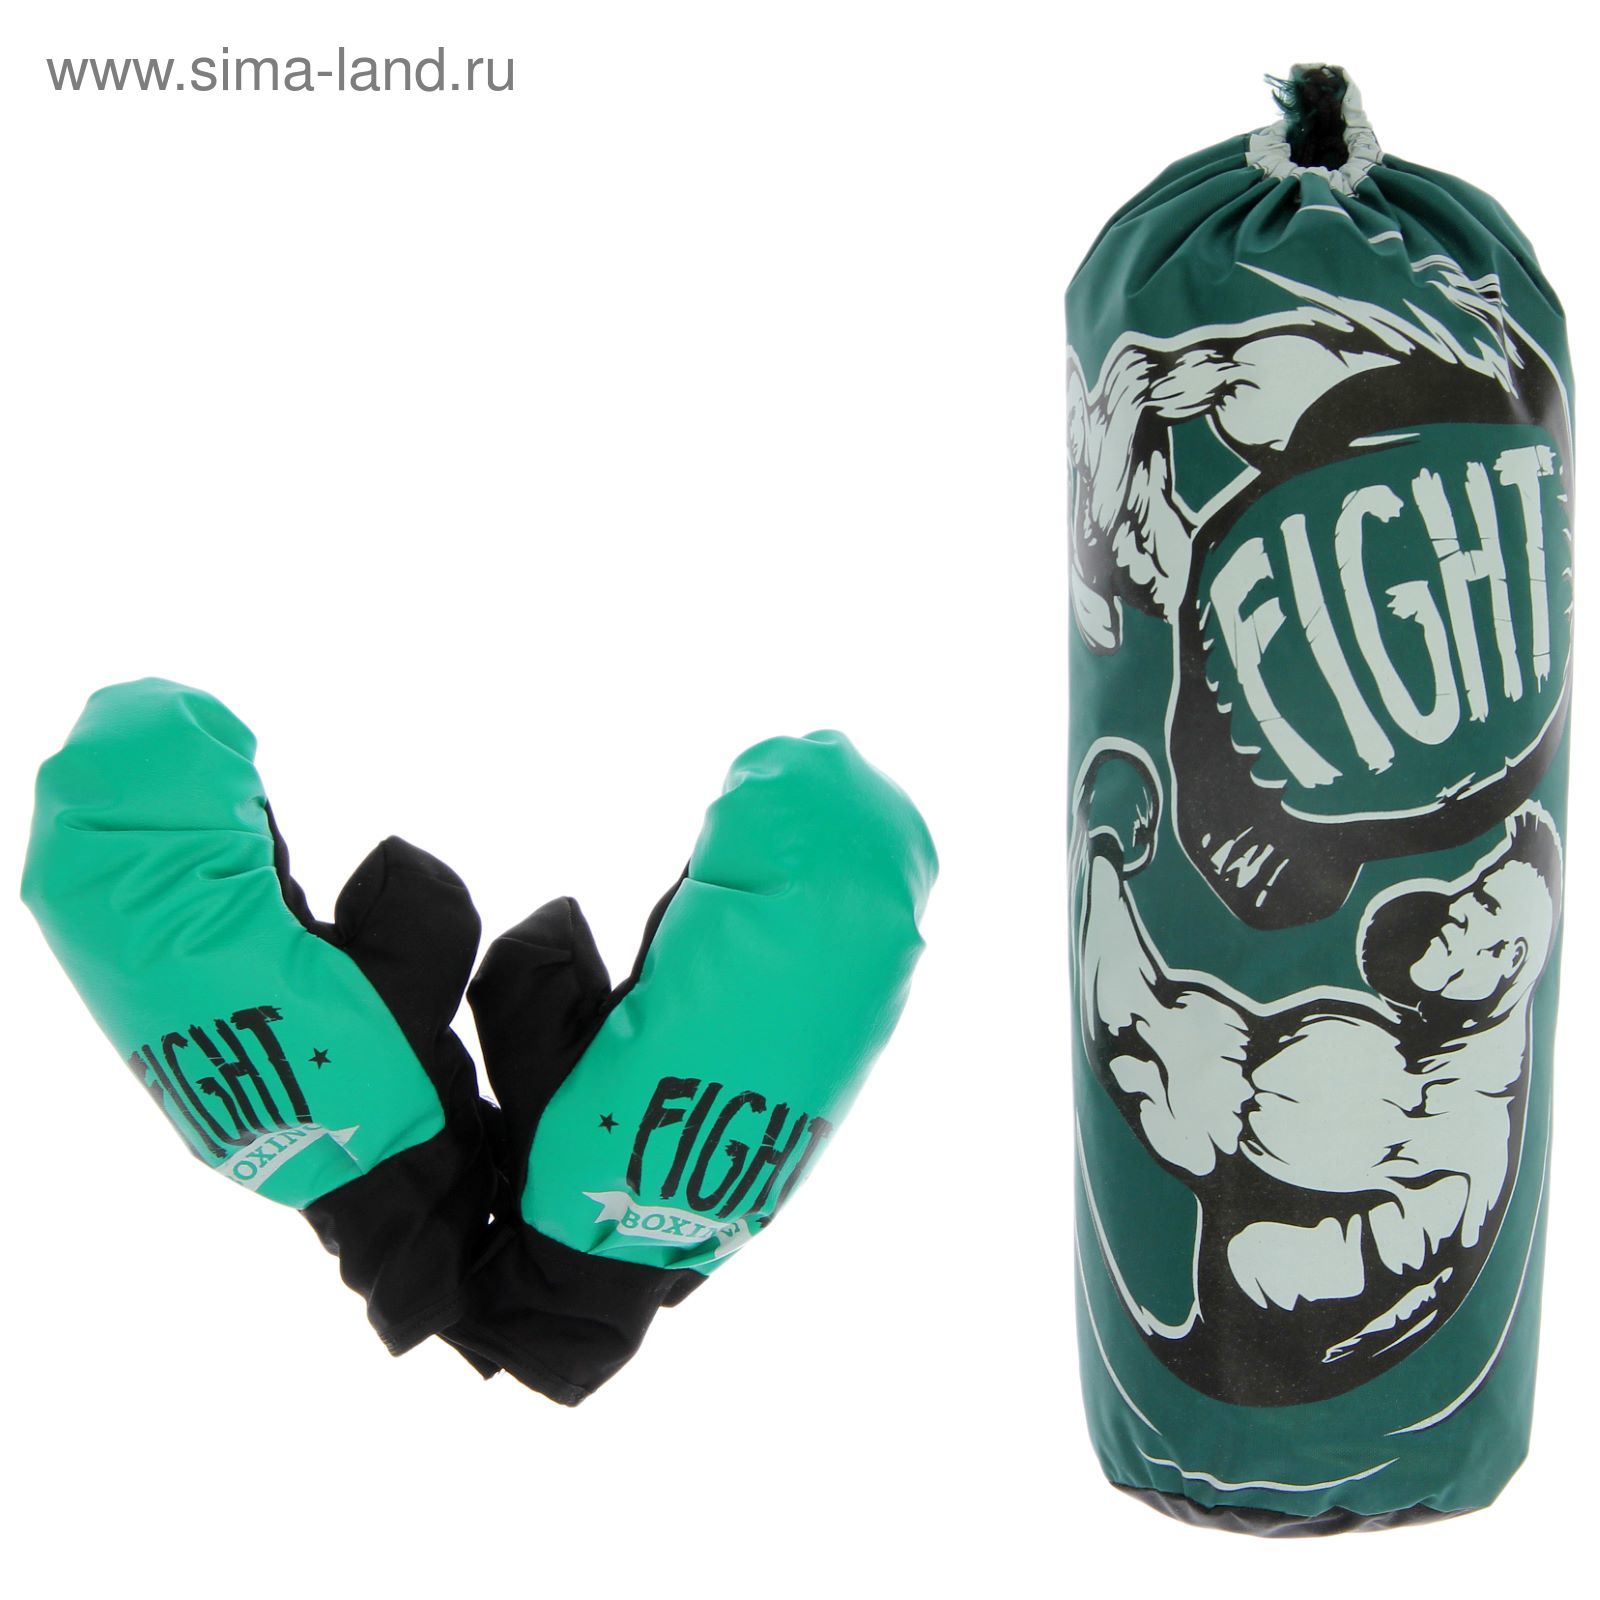 Боксерский набор "Fight boxing", груша и перчатки